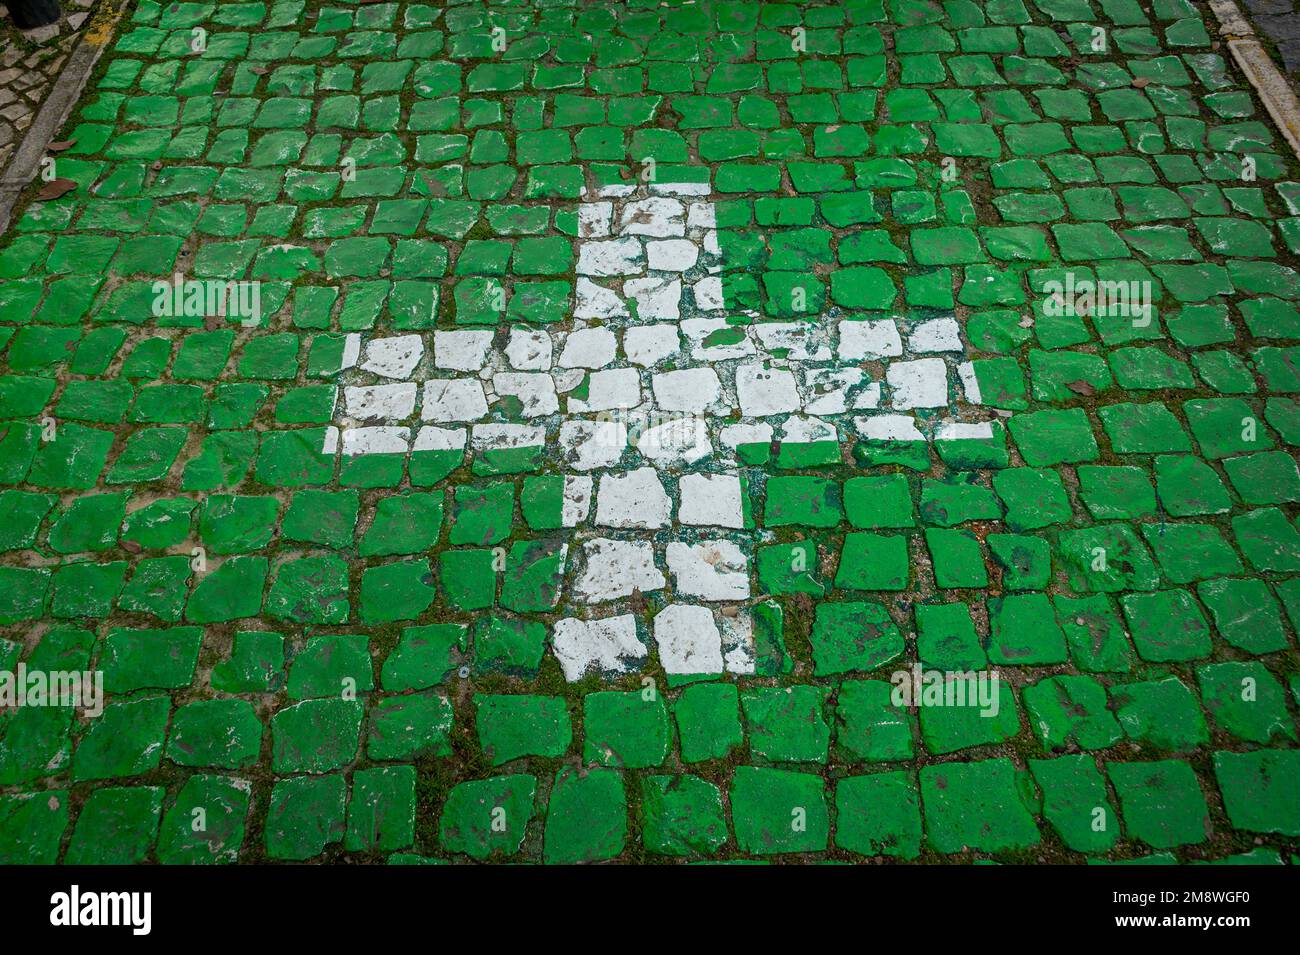 Cruz blanca sobre un fondo de azulejos verdes, aparcamiento de farmacia en Portugal. Foto de stock